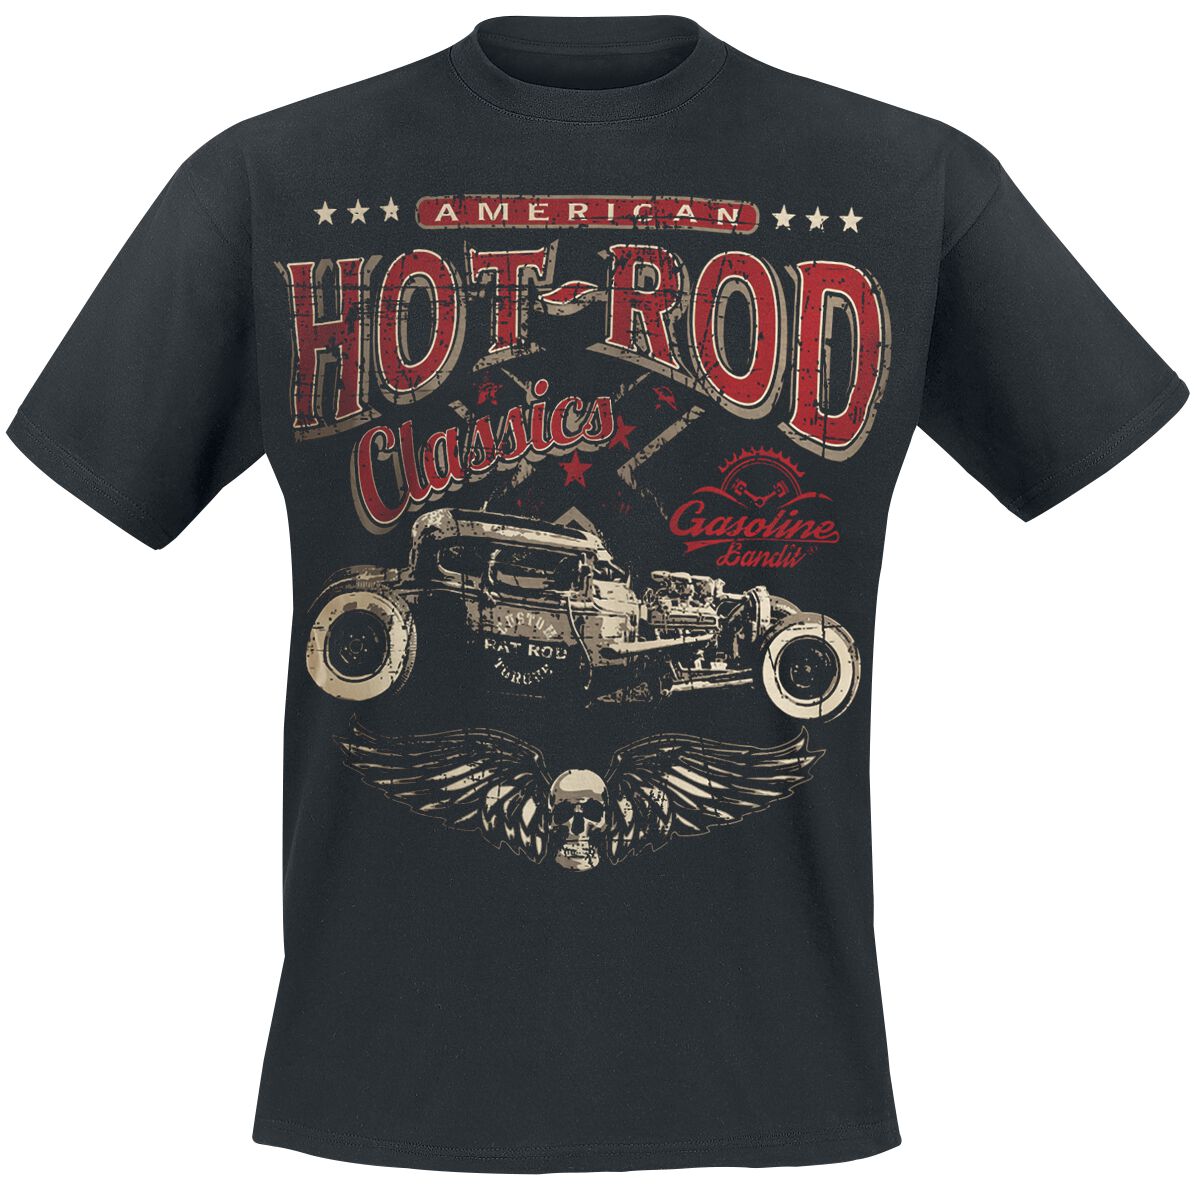 Gasoline Bandit - Rockabilly T-Shirt - Hot Rod Classics - S bis 3XL - für Männer - Größe S - schwarz